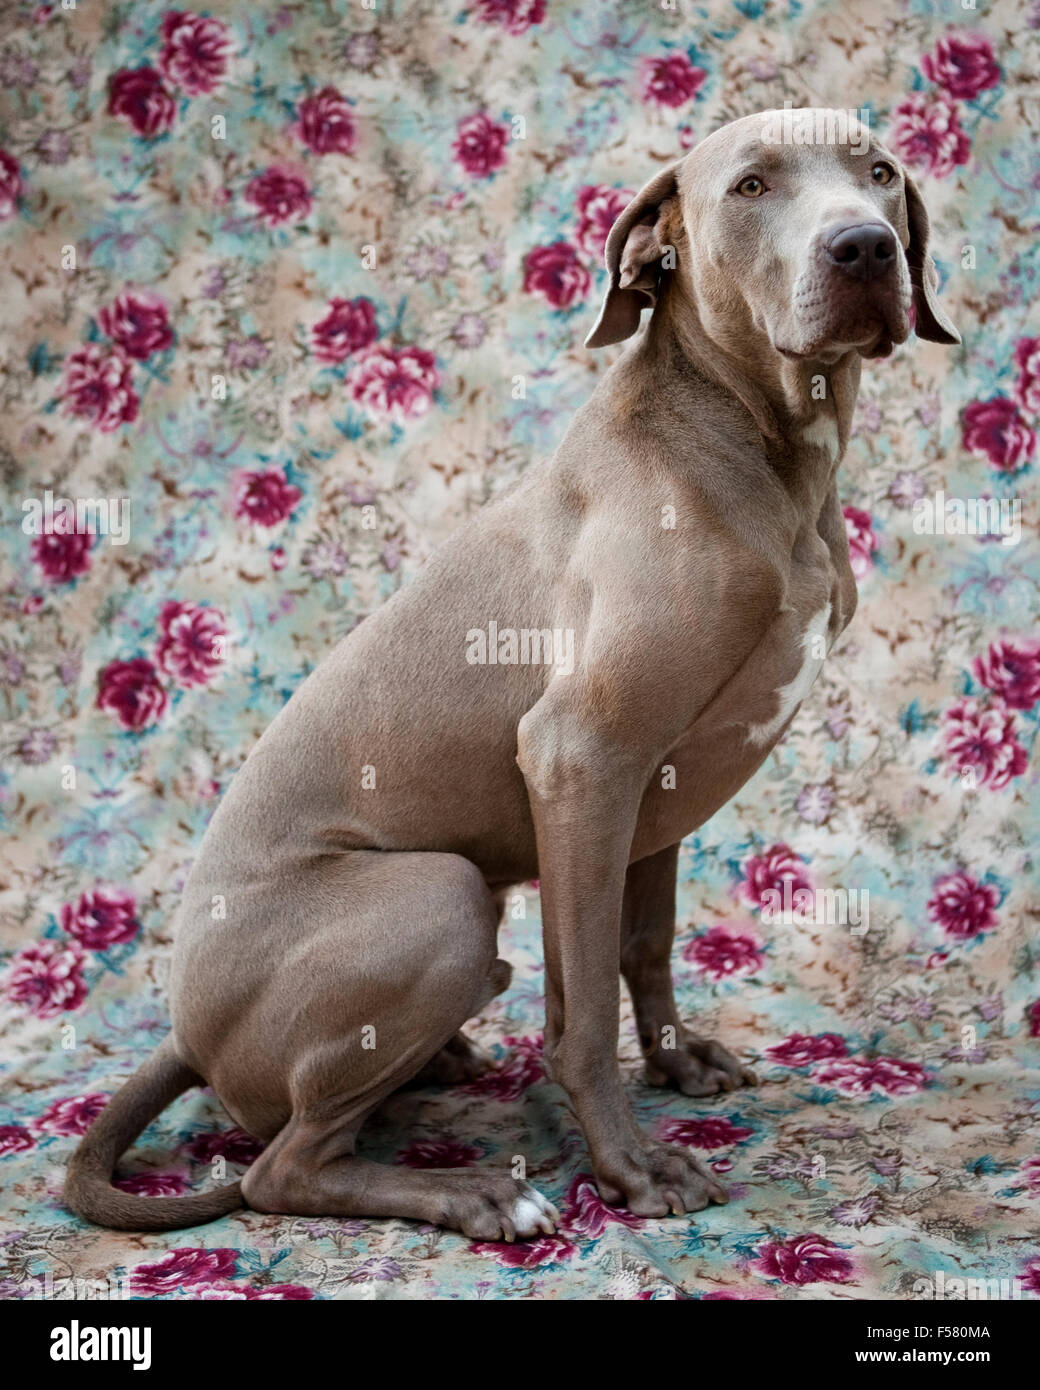 humorvolle schöne Porträt Erwachsenen Weimaraner Hundesitting-Profil auf einem floralen Stoff Hintergrund hinter der Kamera suchen Stockfoto